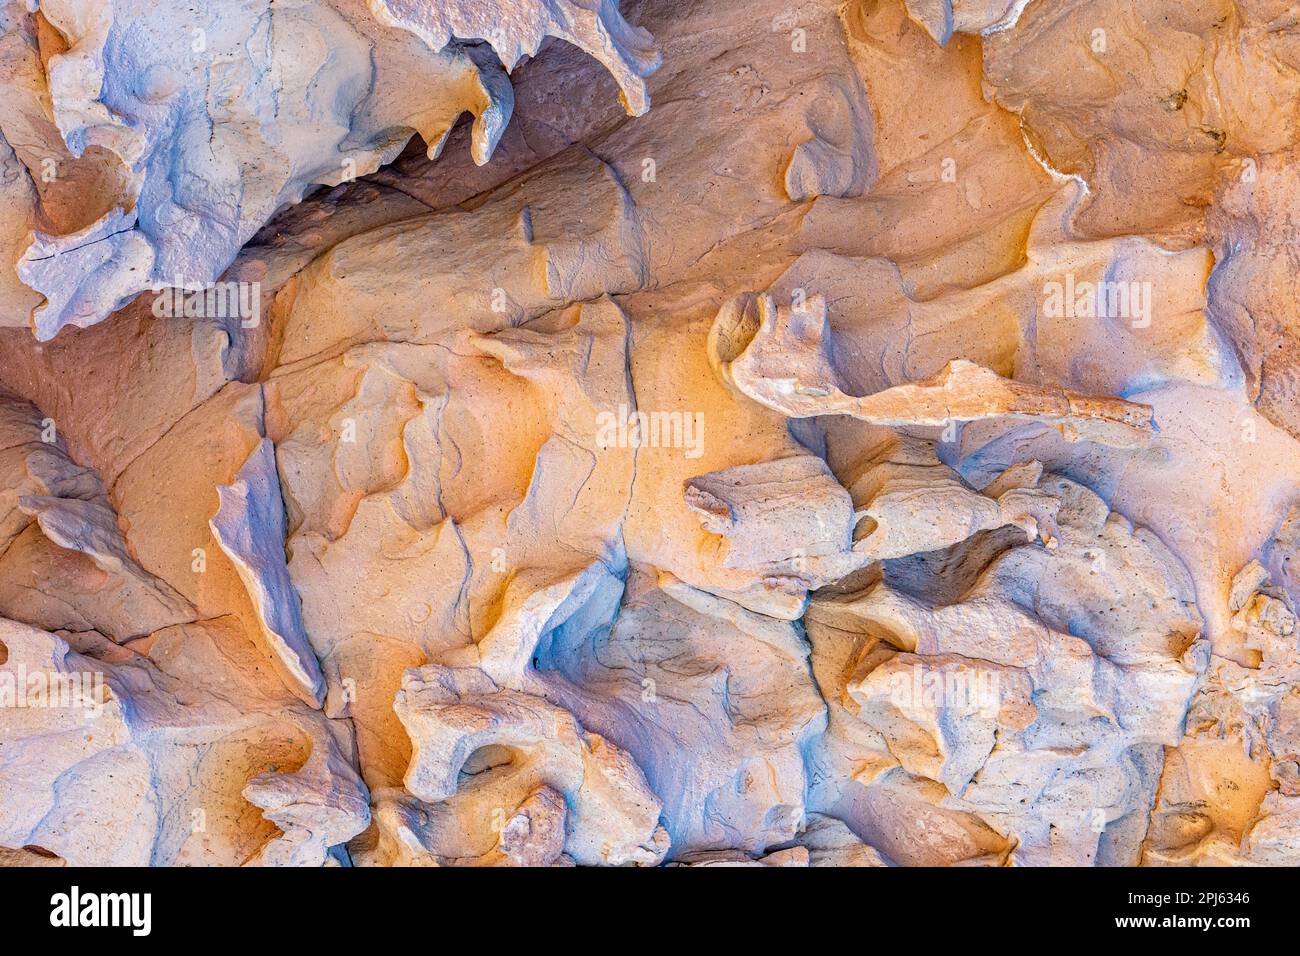 Primo piano del muro di massiccio roccioso nel Cerro de la Calavera, formazione rocciosa a struttura irregolare, scanalature ed erosioni causate dal passaggio del tempo, s Foto Stock